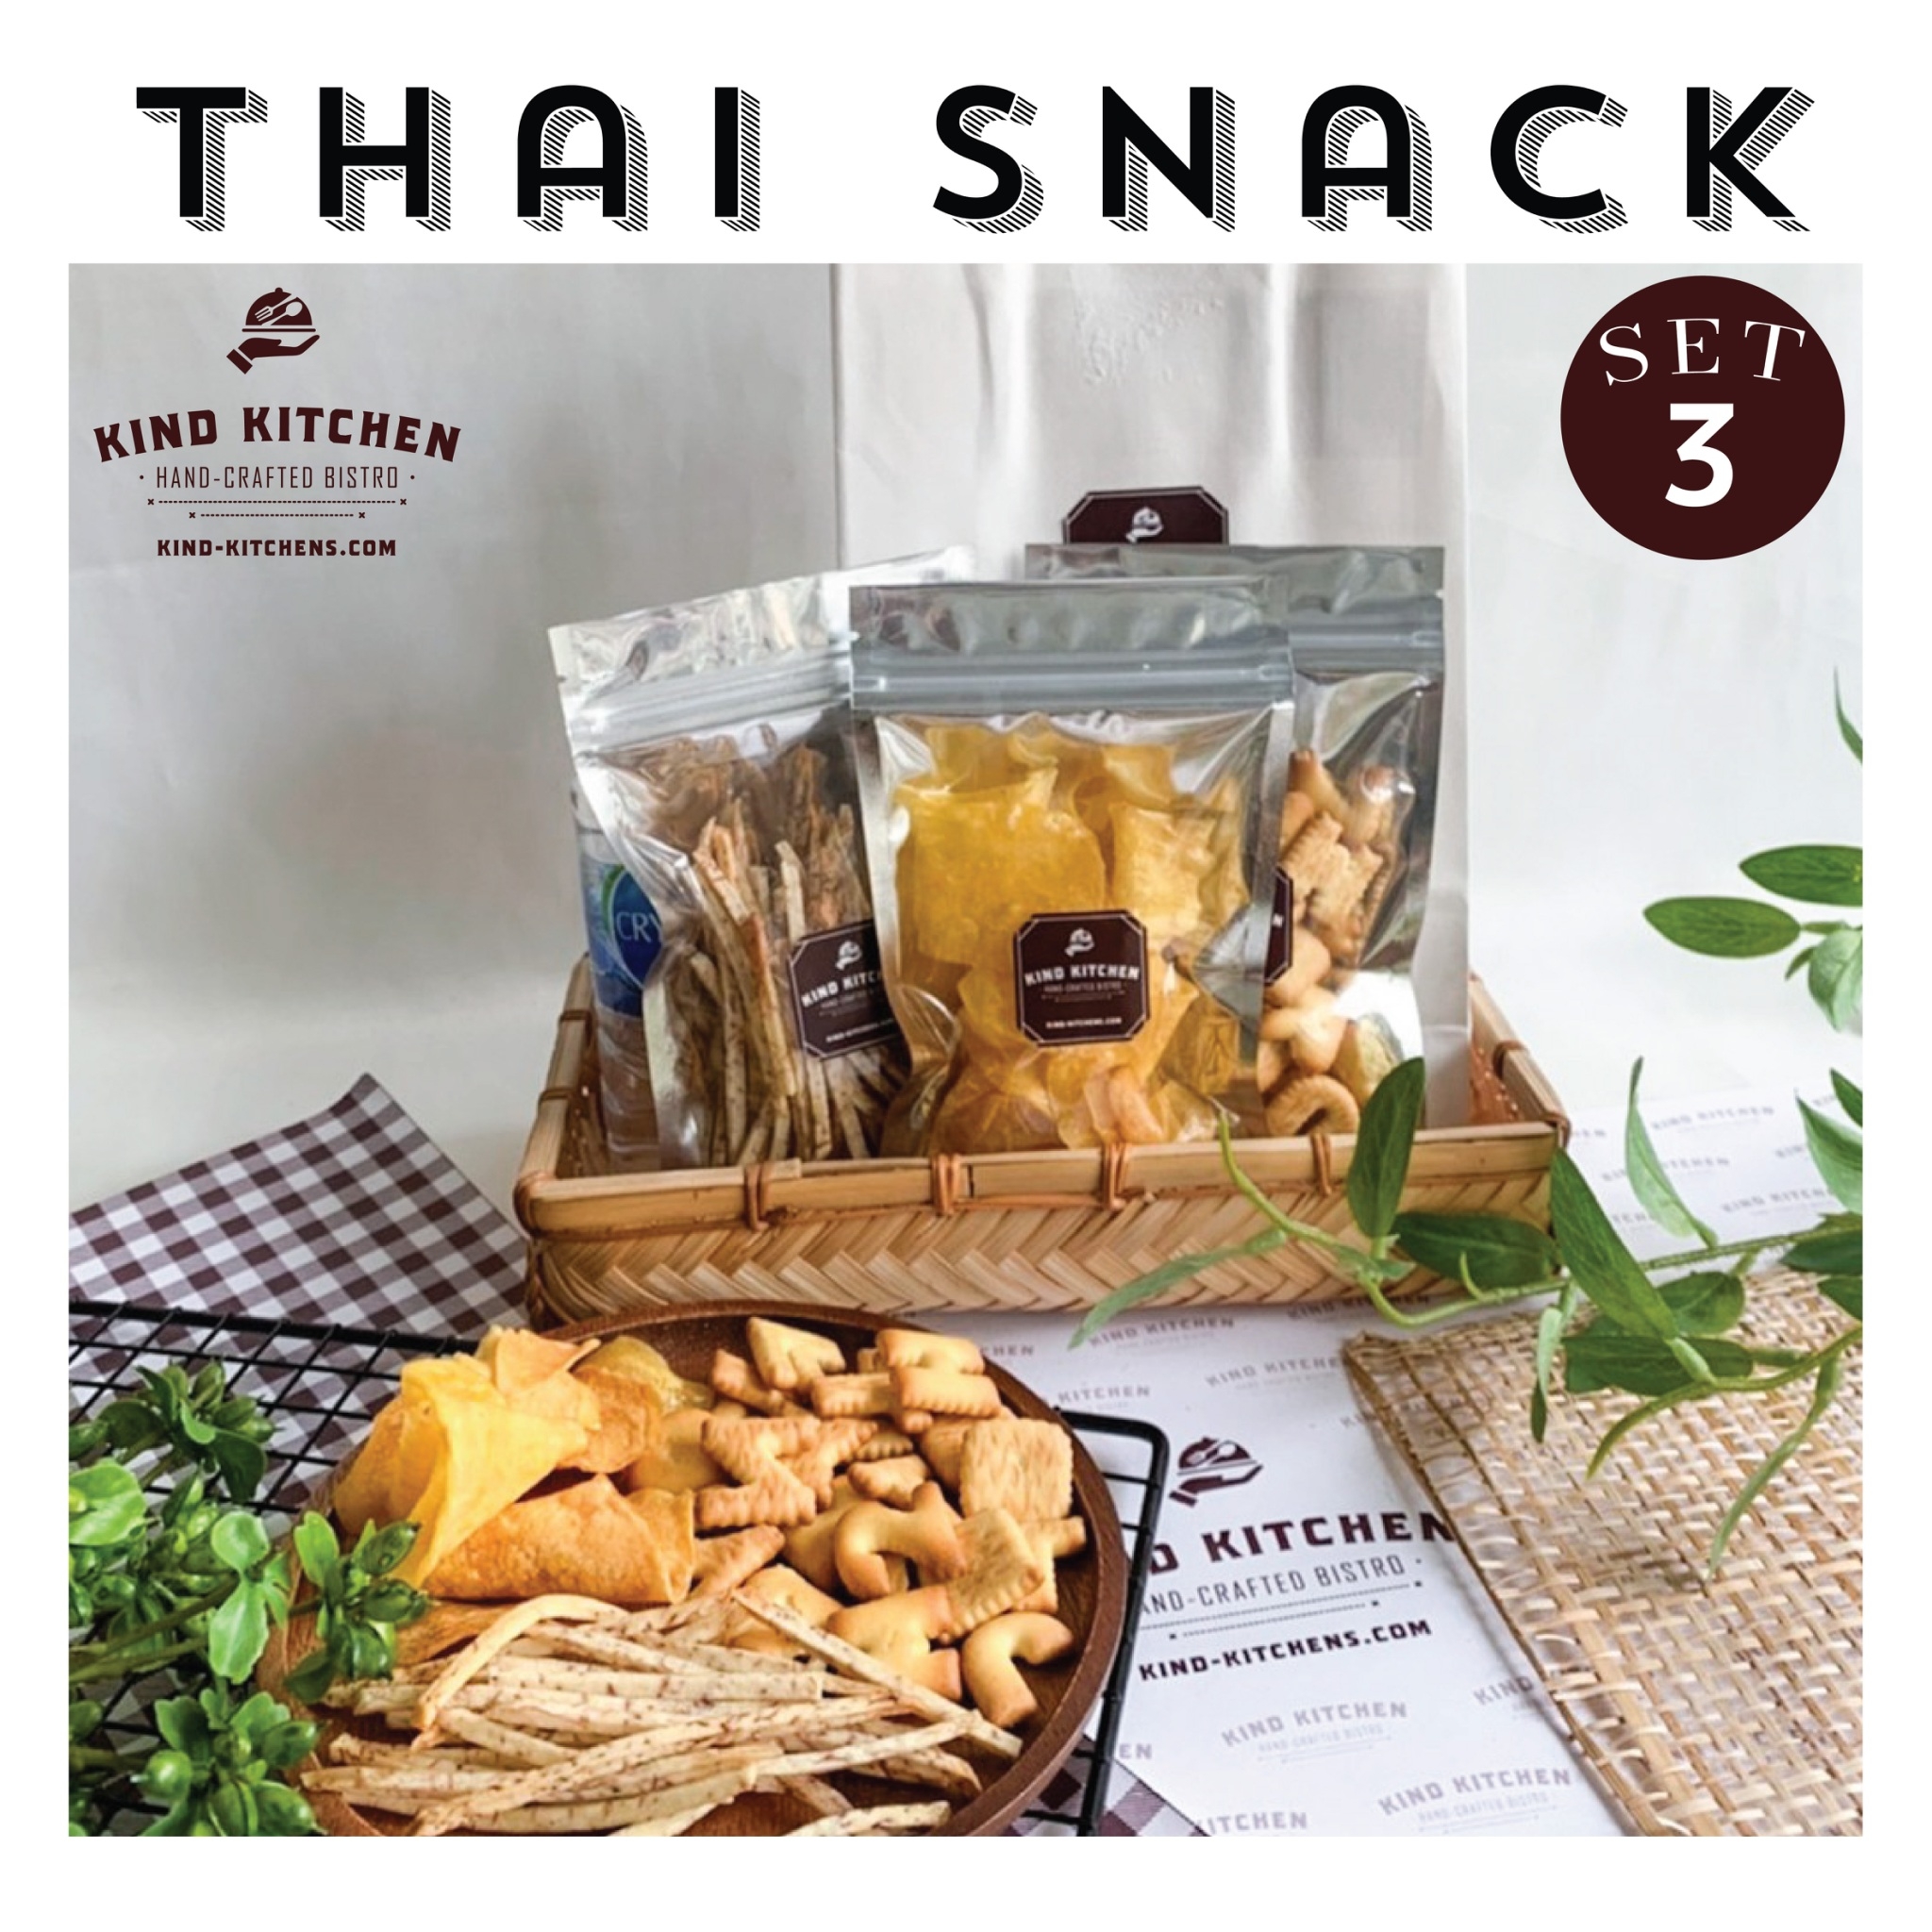 ขนมอบกรอบ Thai Snack  3ชนิด พร้อมน้ำและถุง  Set 3 (เลือกขนมได้ 3 ชนิด)